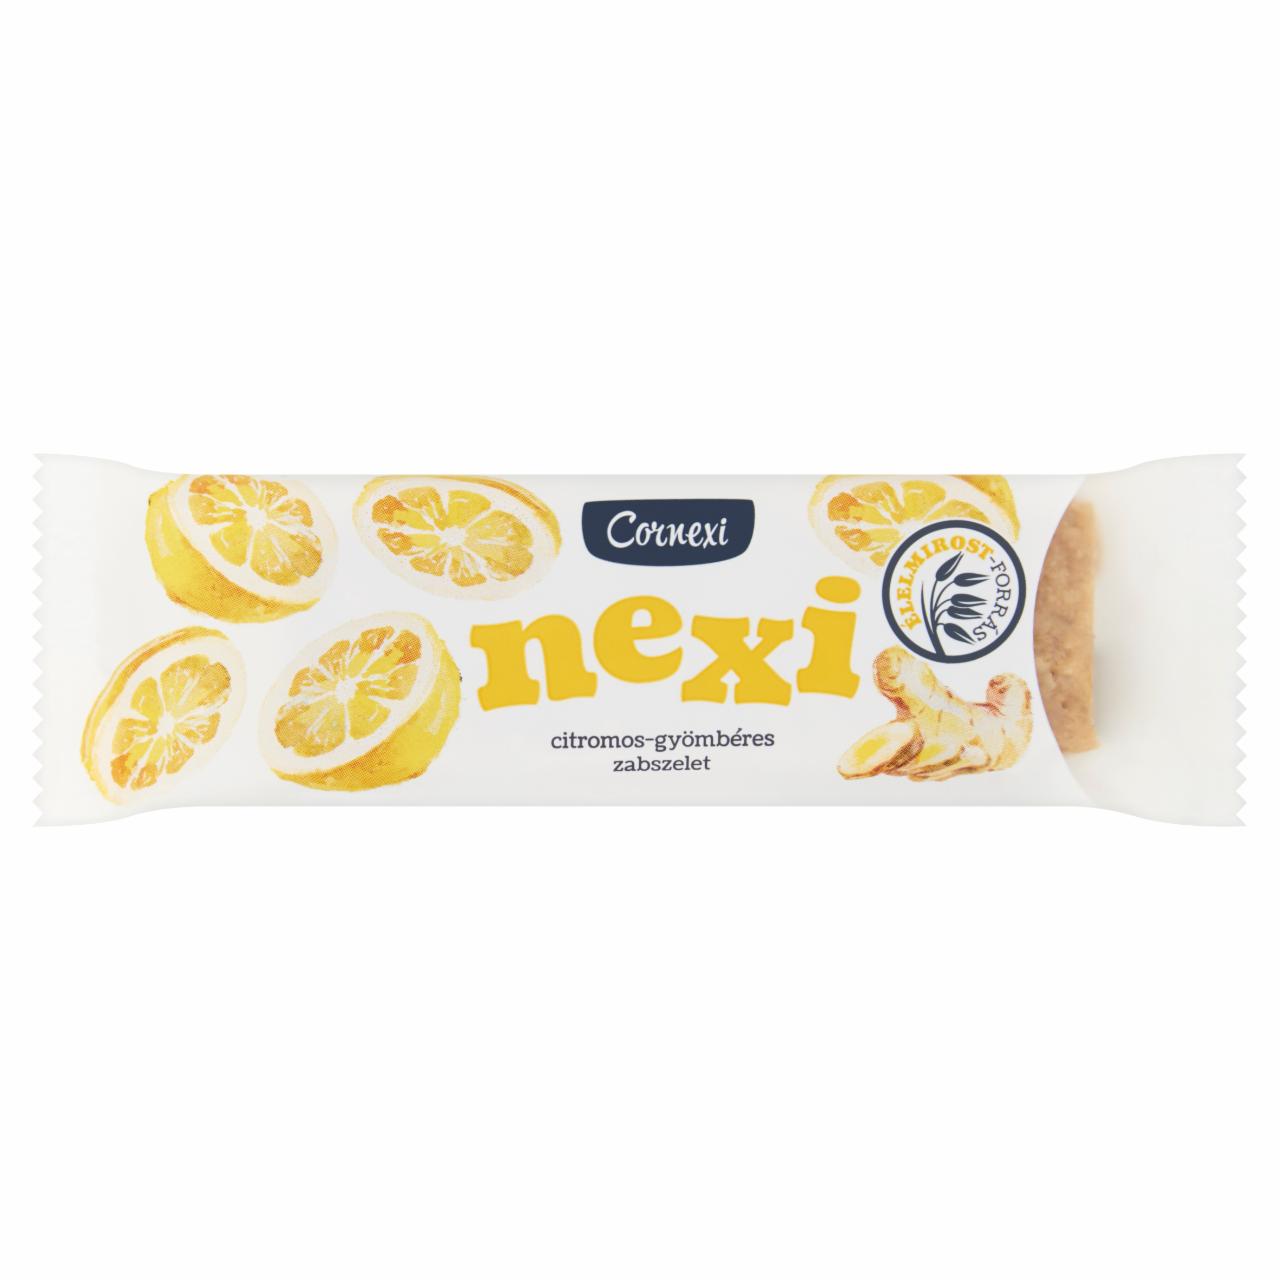 Képek - Cornexi nexi citromos-gyömbéres zabszelet 45 g